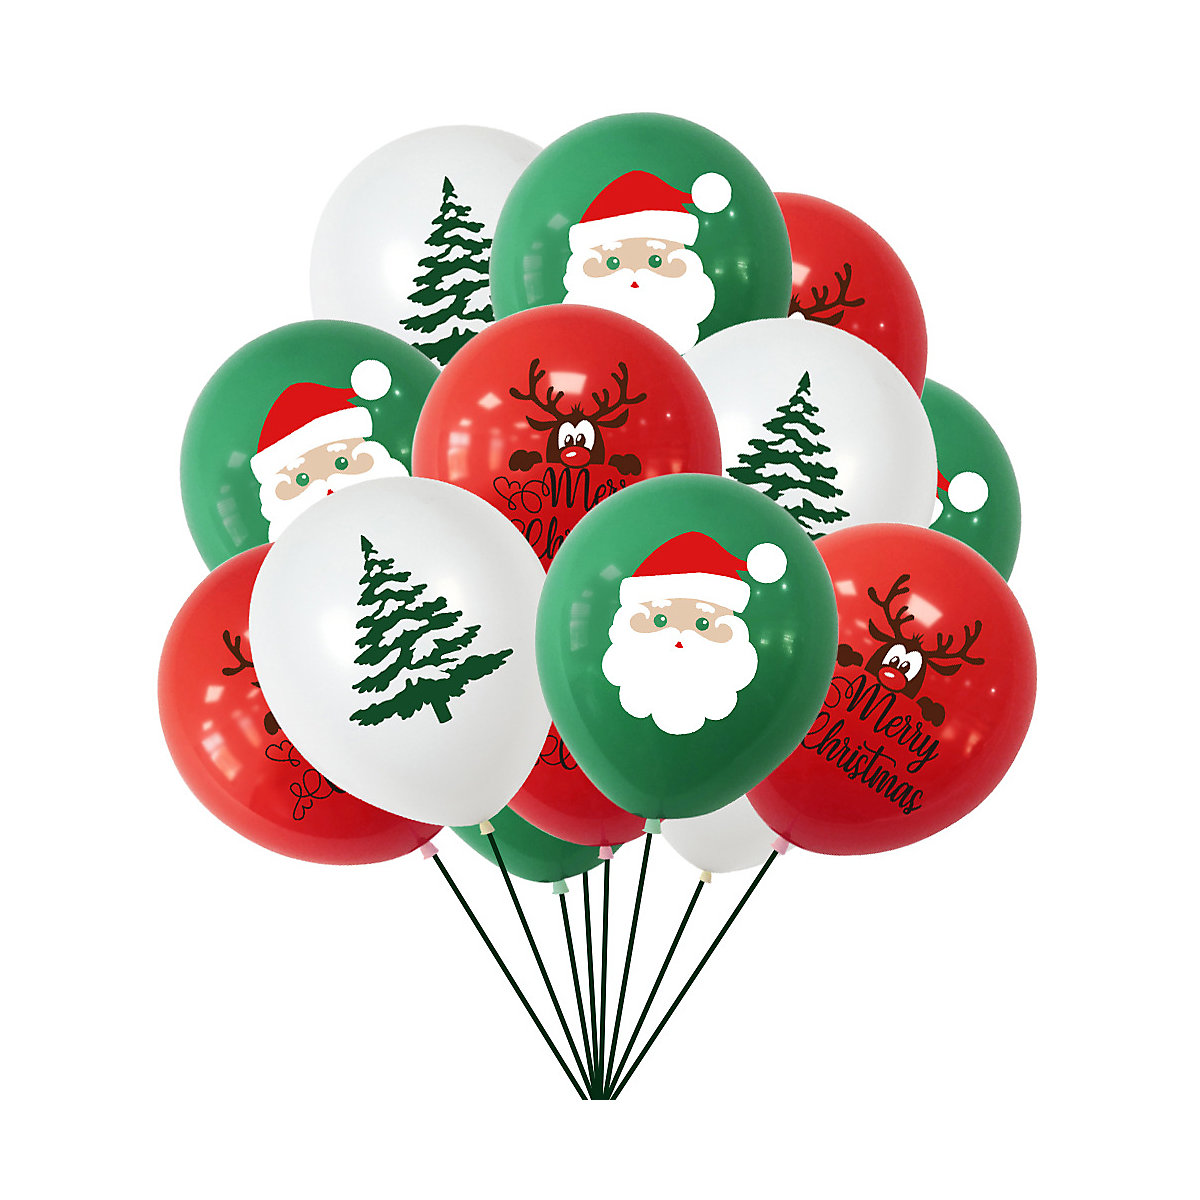 Vicabo Weihnachten Luftballons 15 Stück Rundballons für Kinder